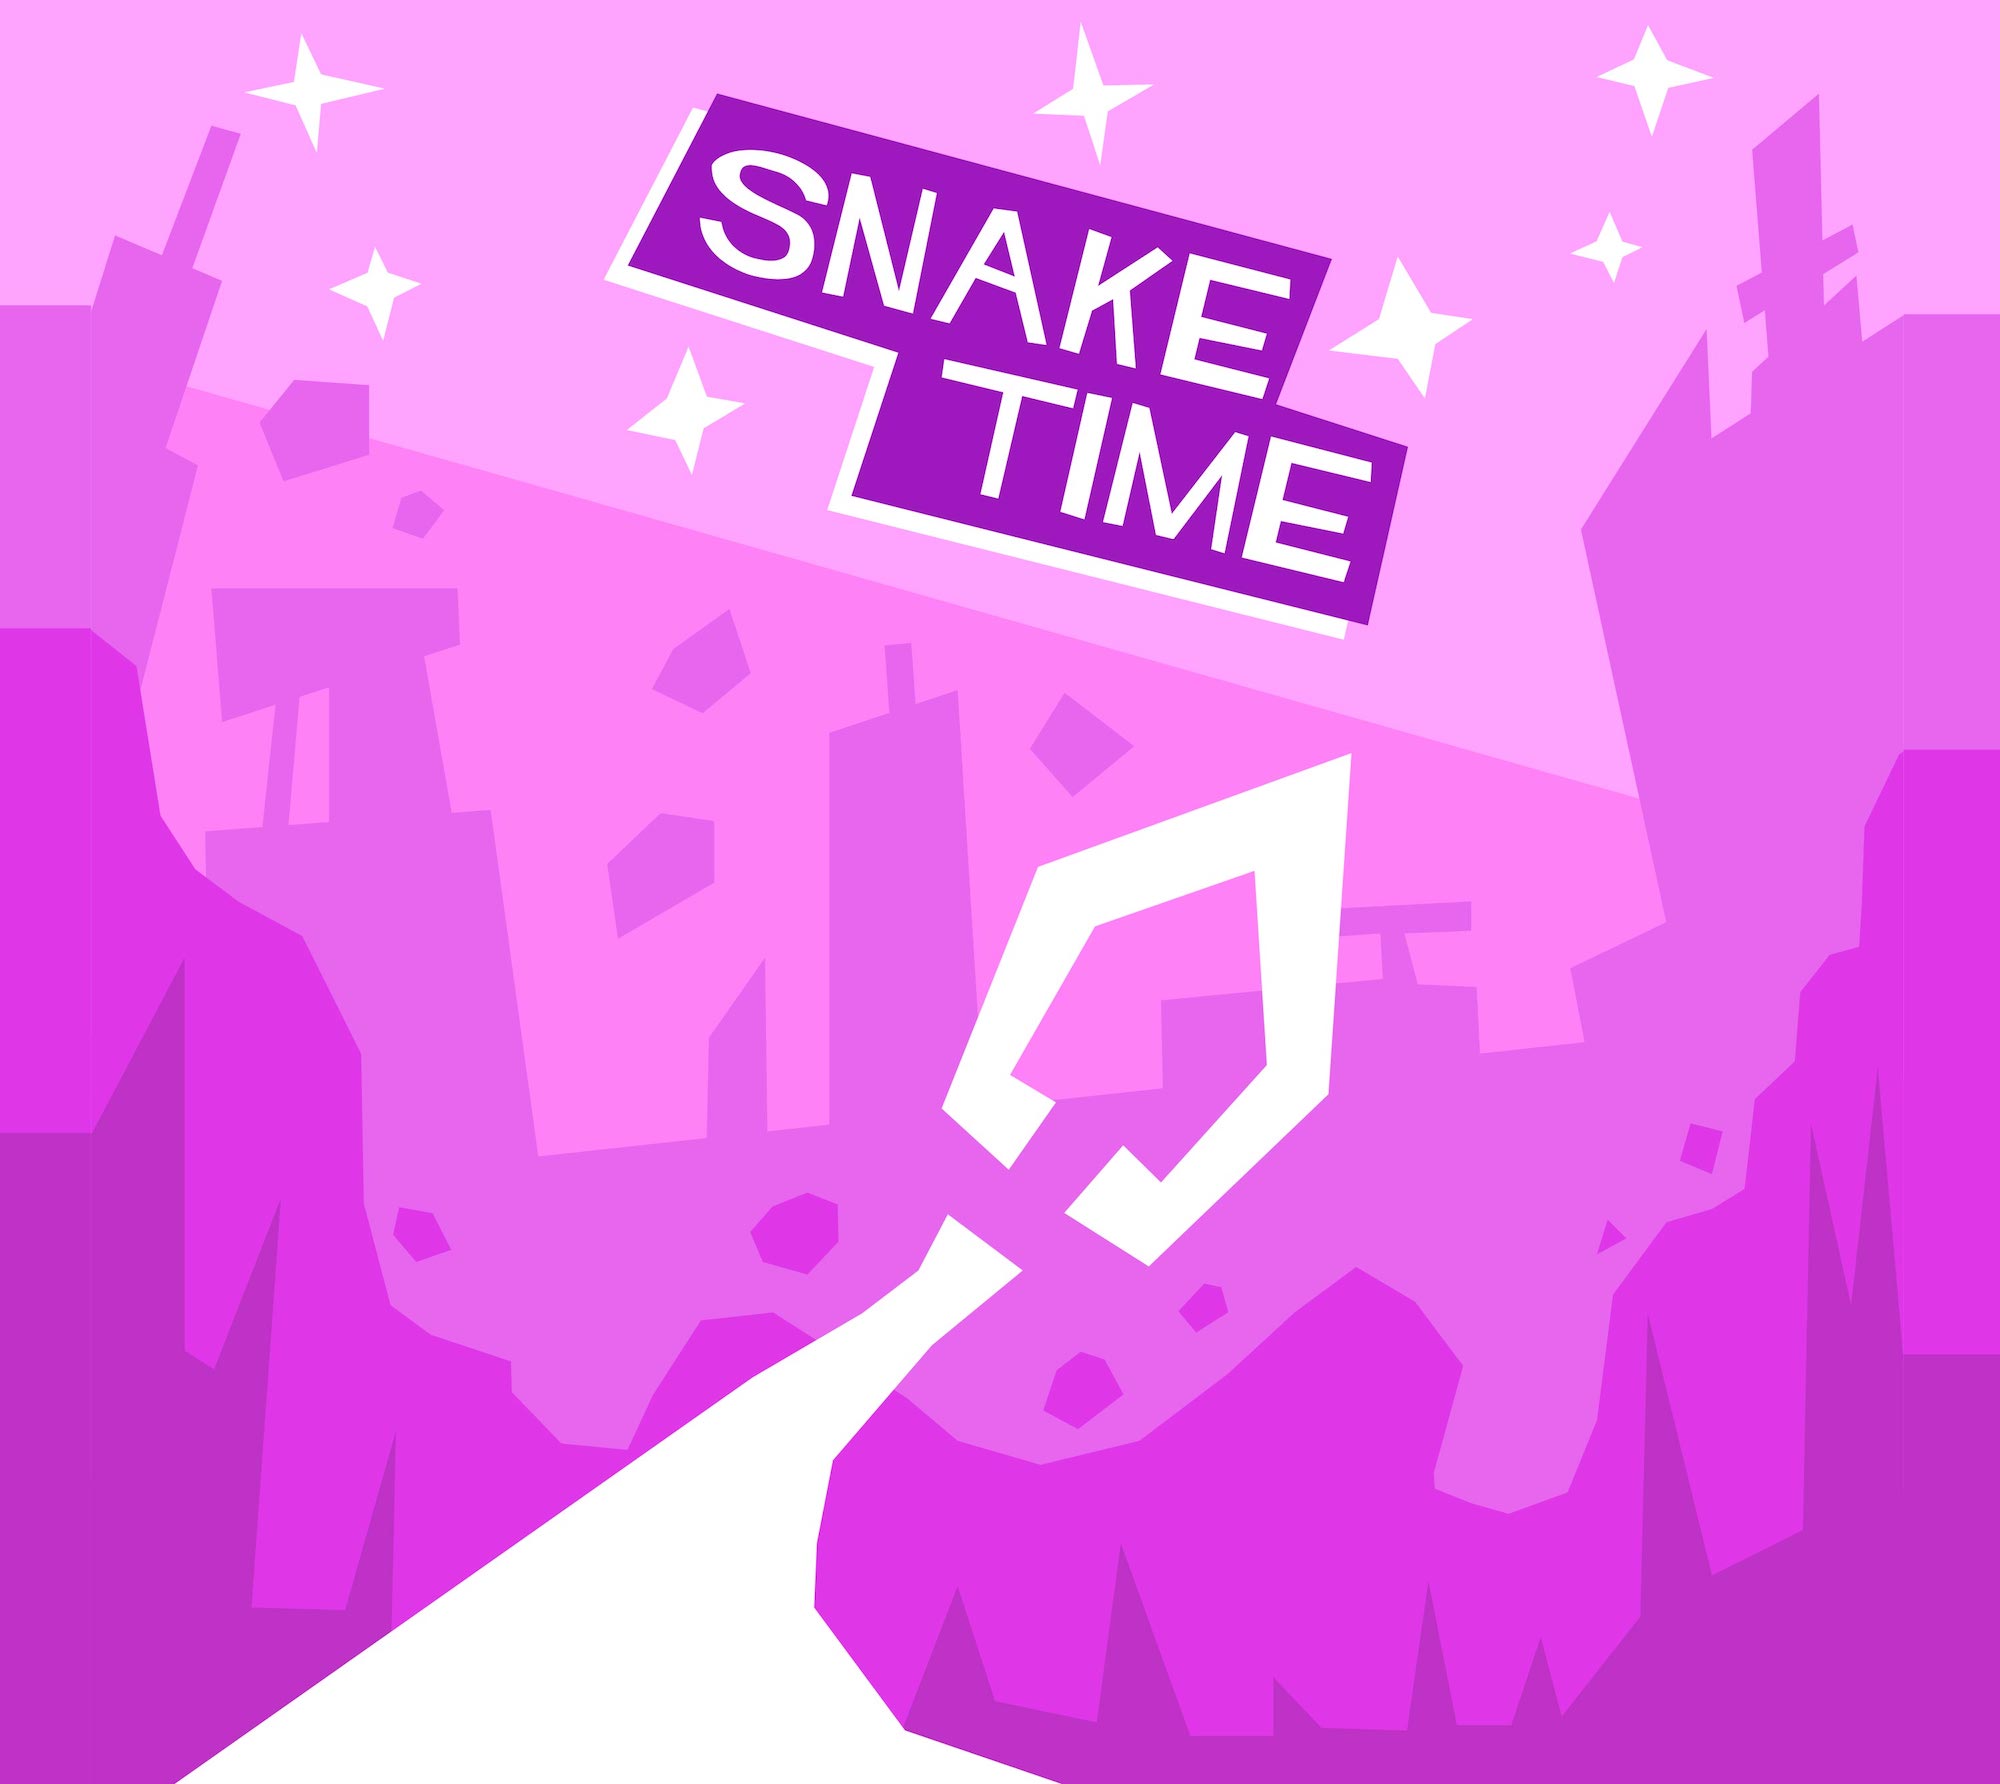 Snake Time